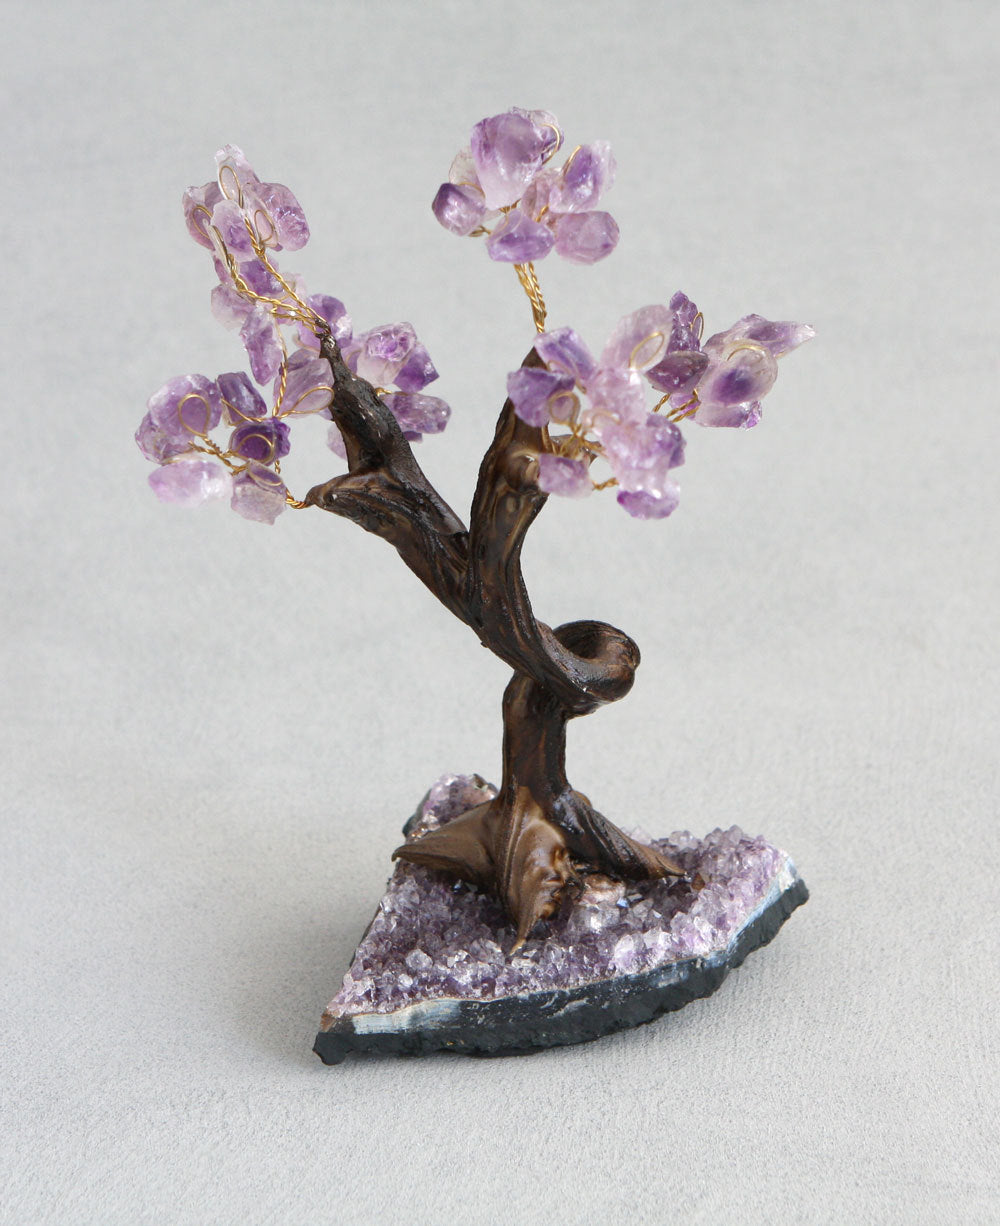 Amethyst Gemstone Bonsai Tree – Cultural Elements